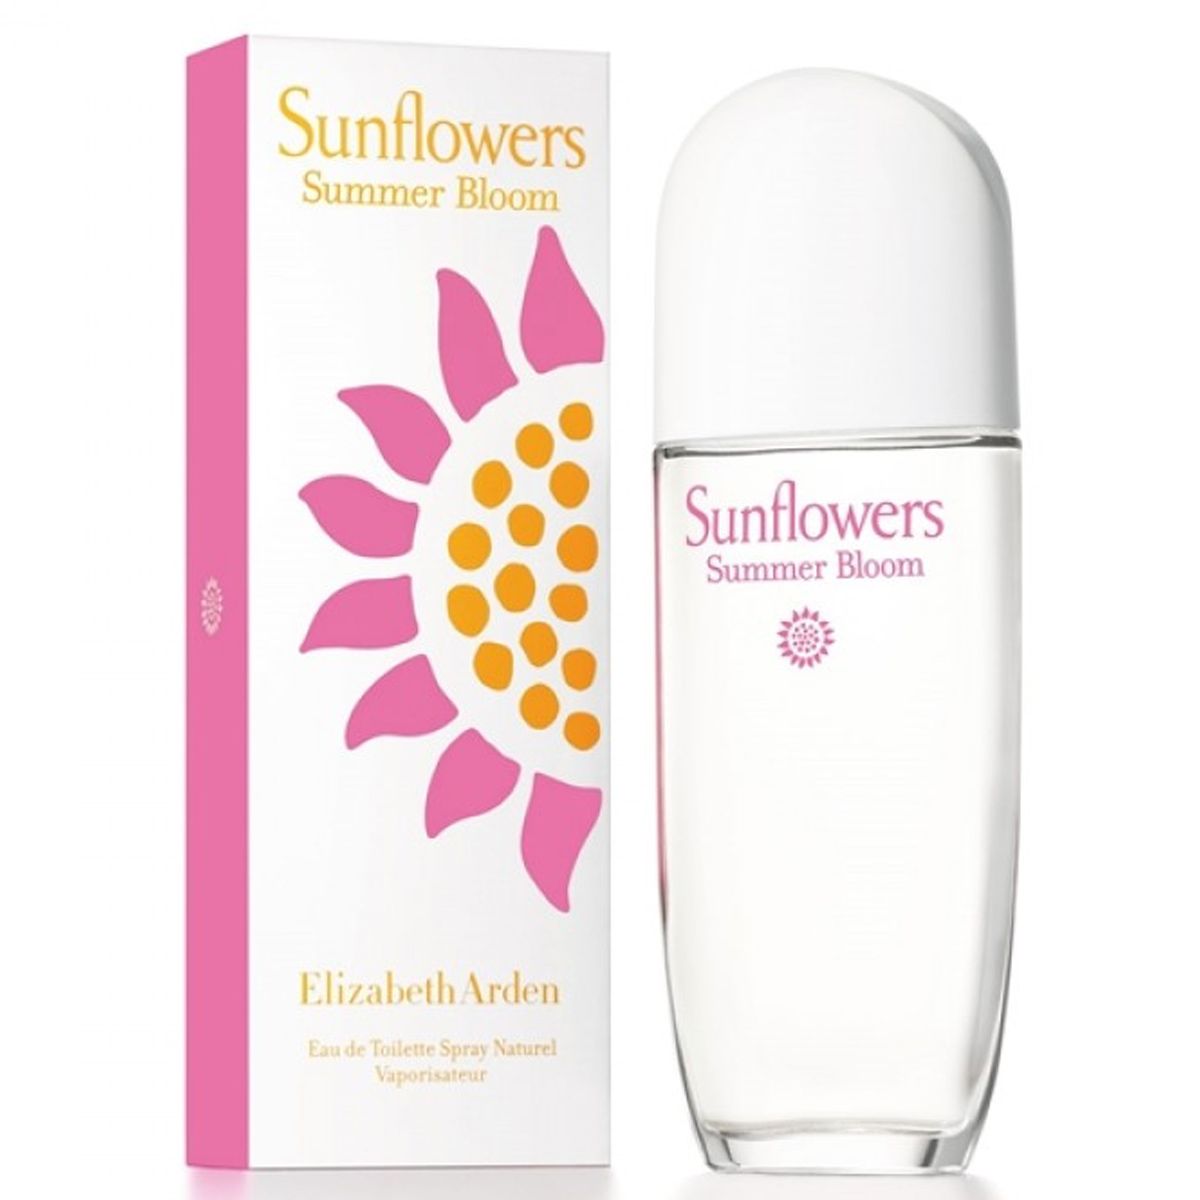  Elizabeth Arden Sunflowers Summer Bloom 